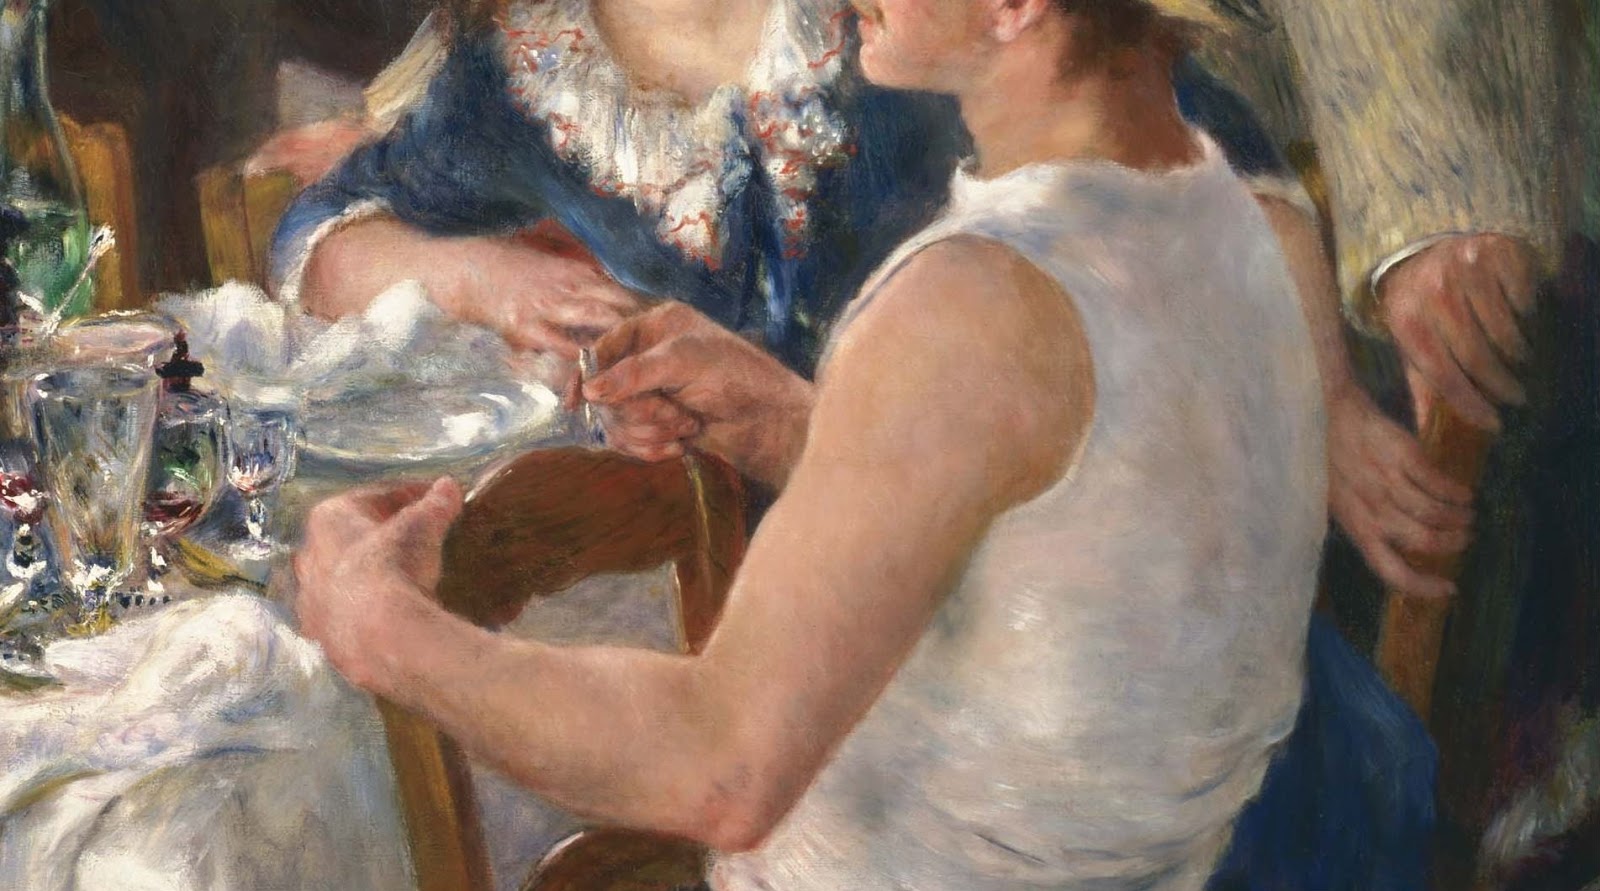 Pierre+Auguste+Renoir-1841-1-19 (579).JPG